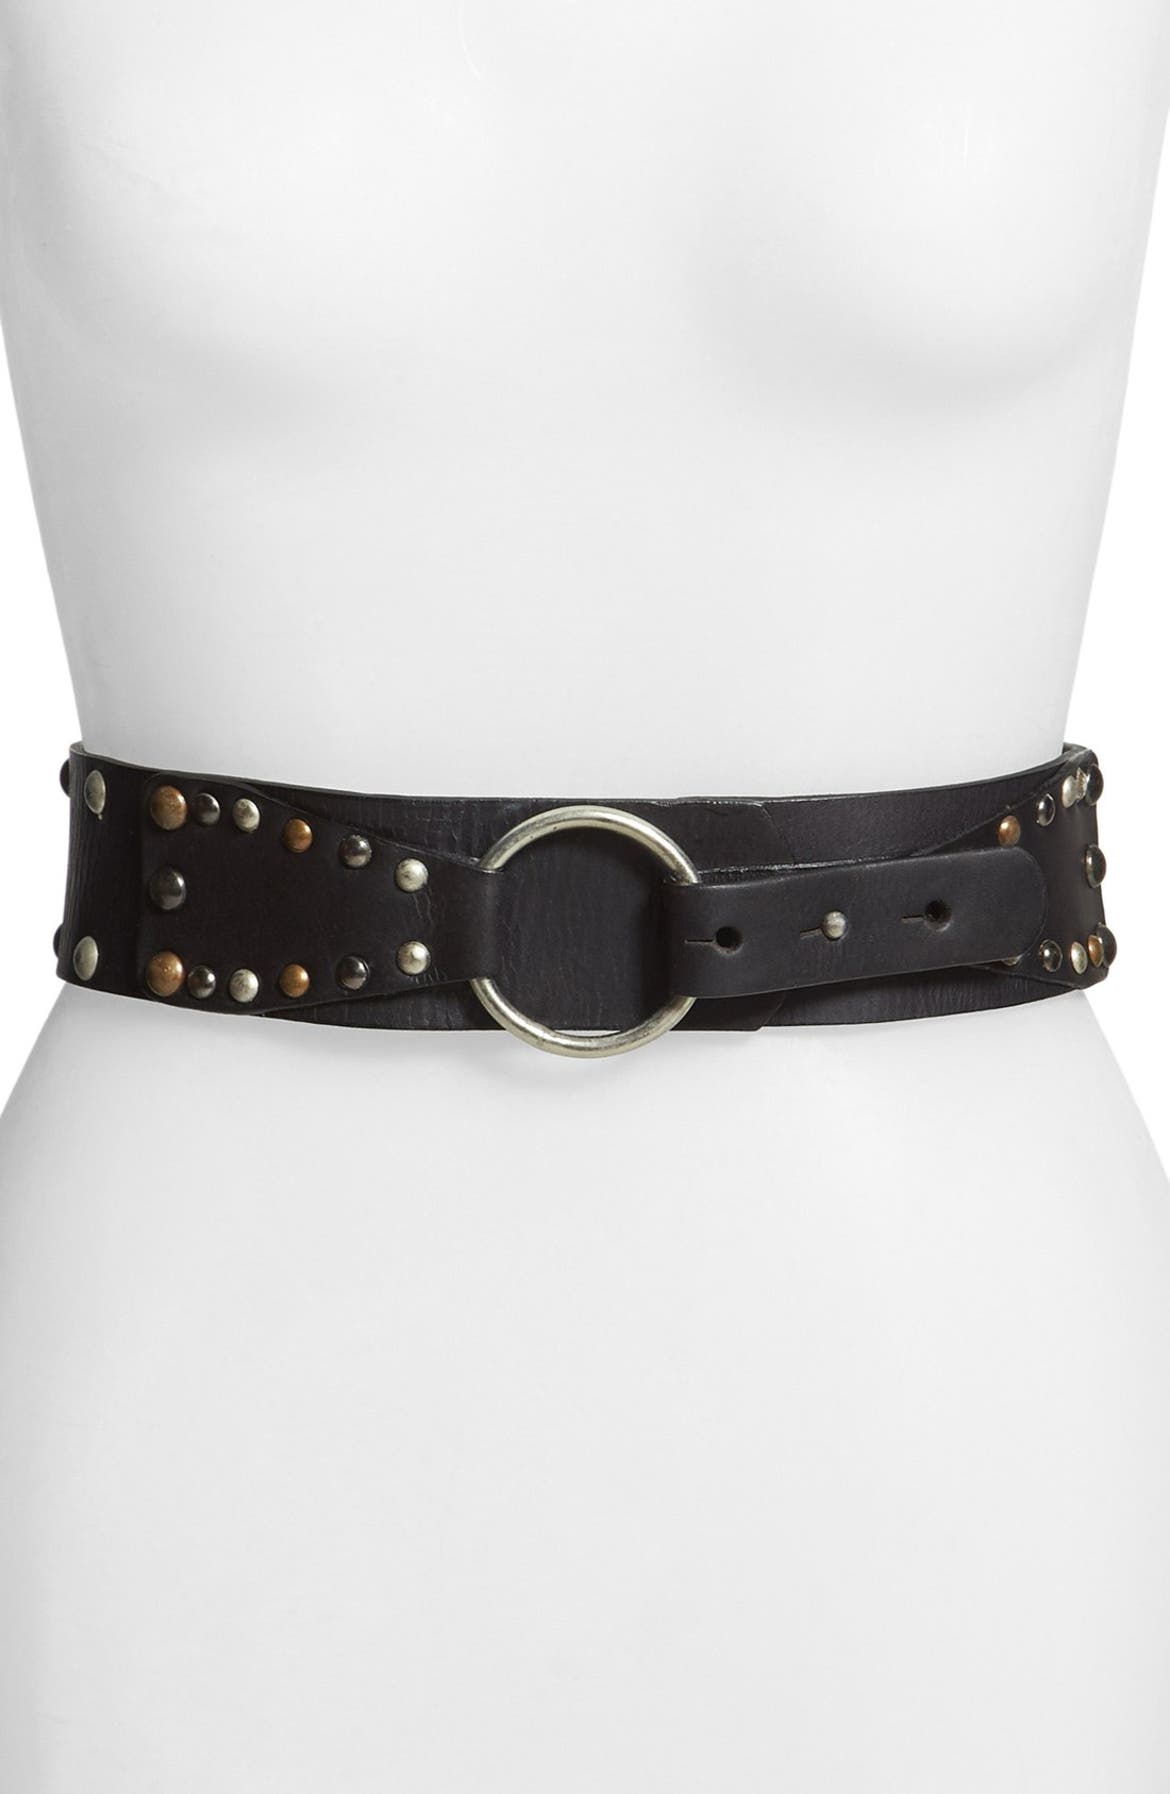 CK Calvin Klein Jeans Studded Leather Belt | Nordstrom